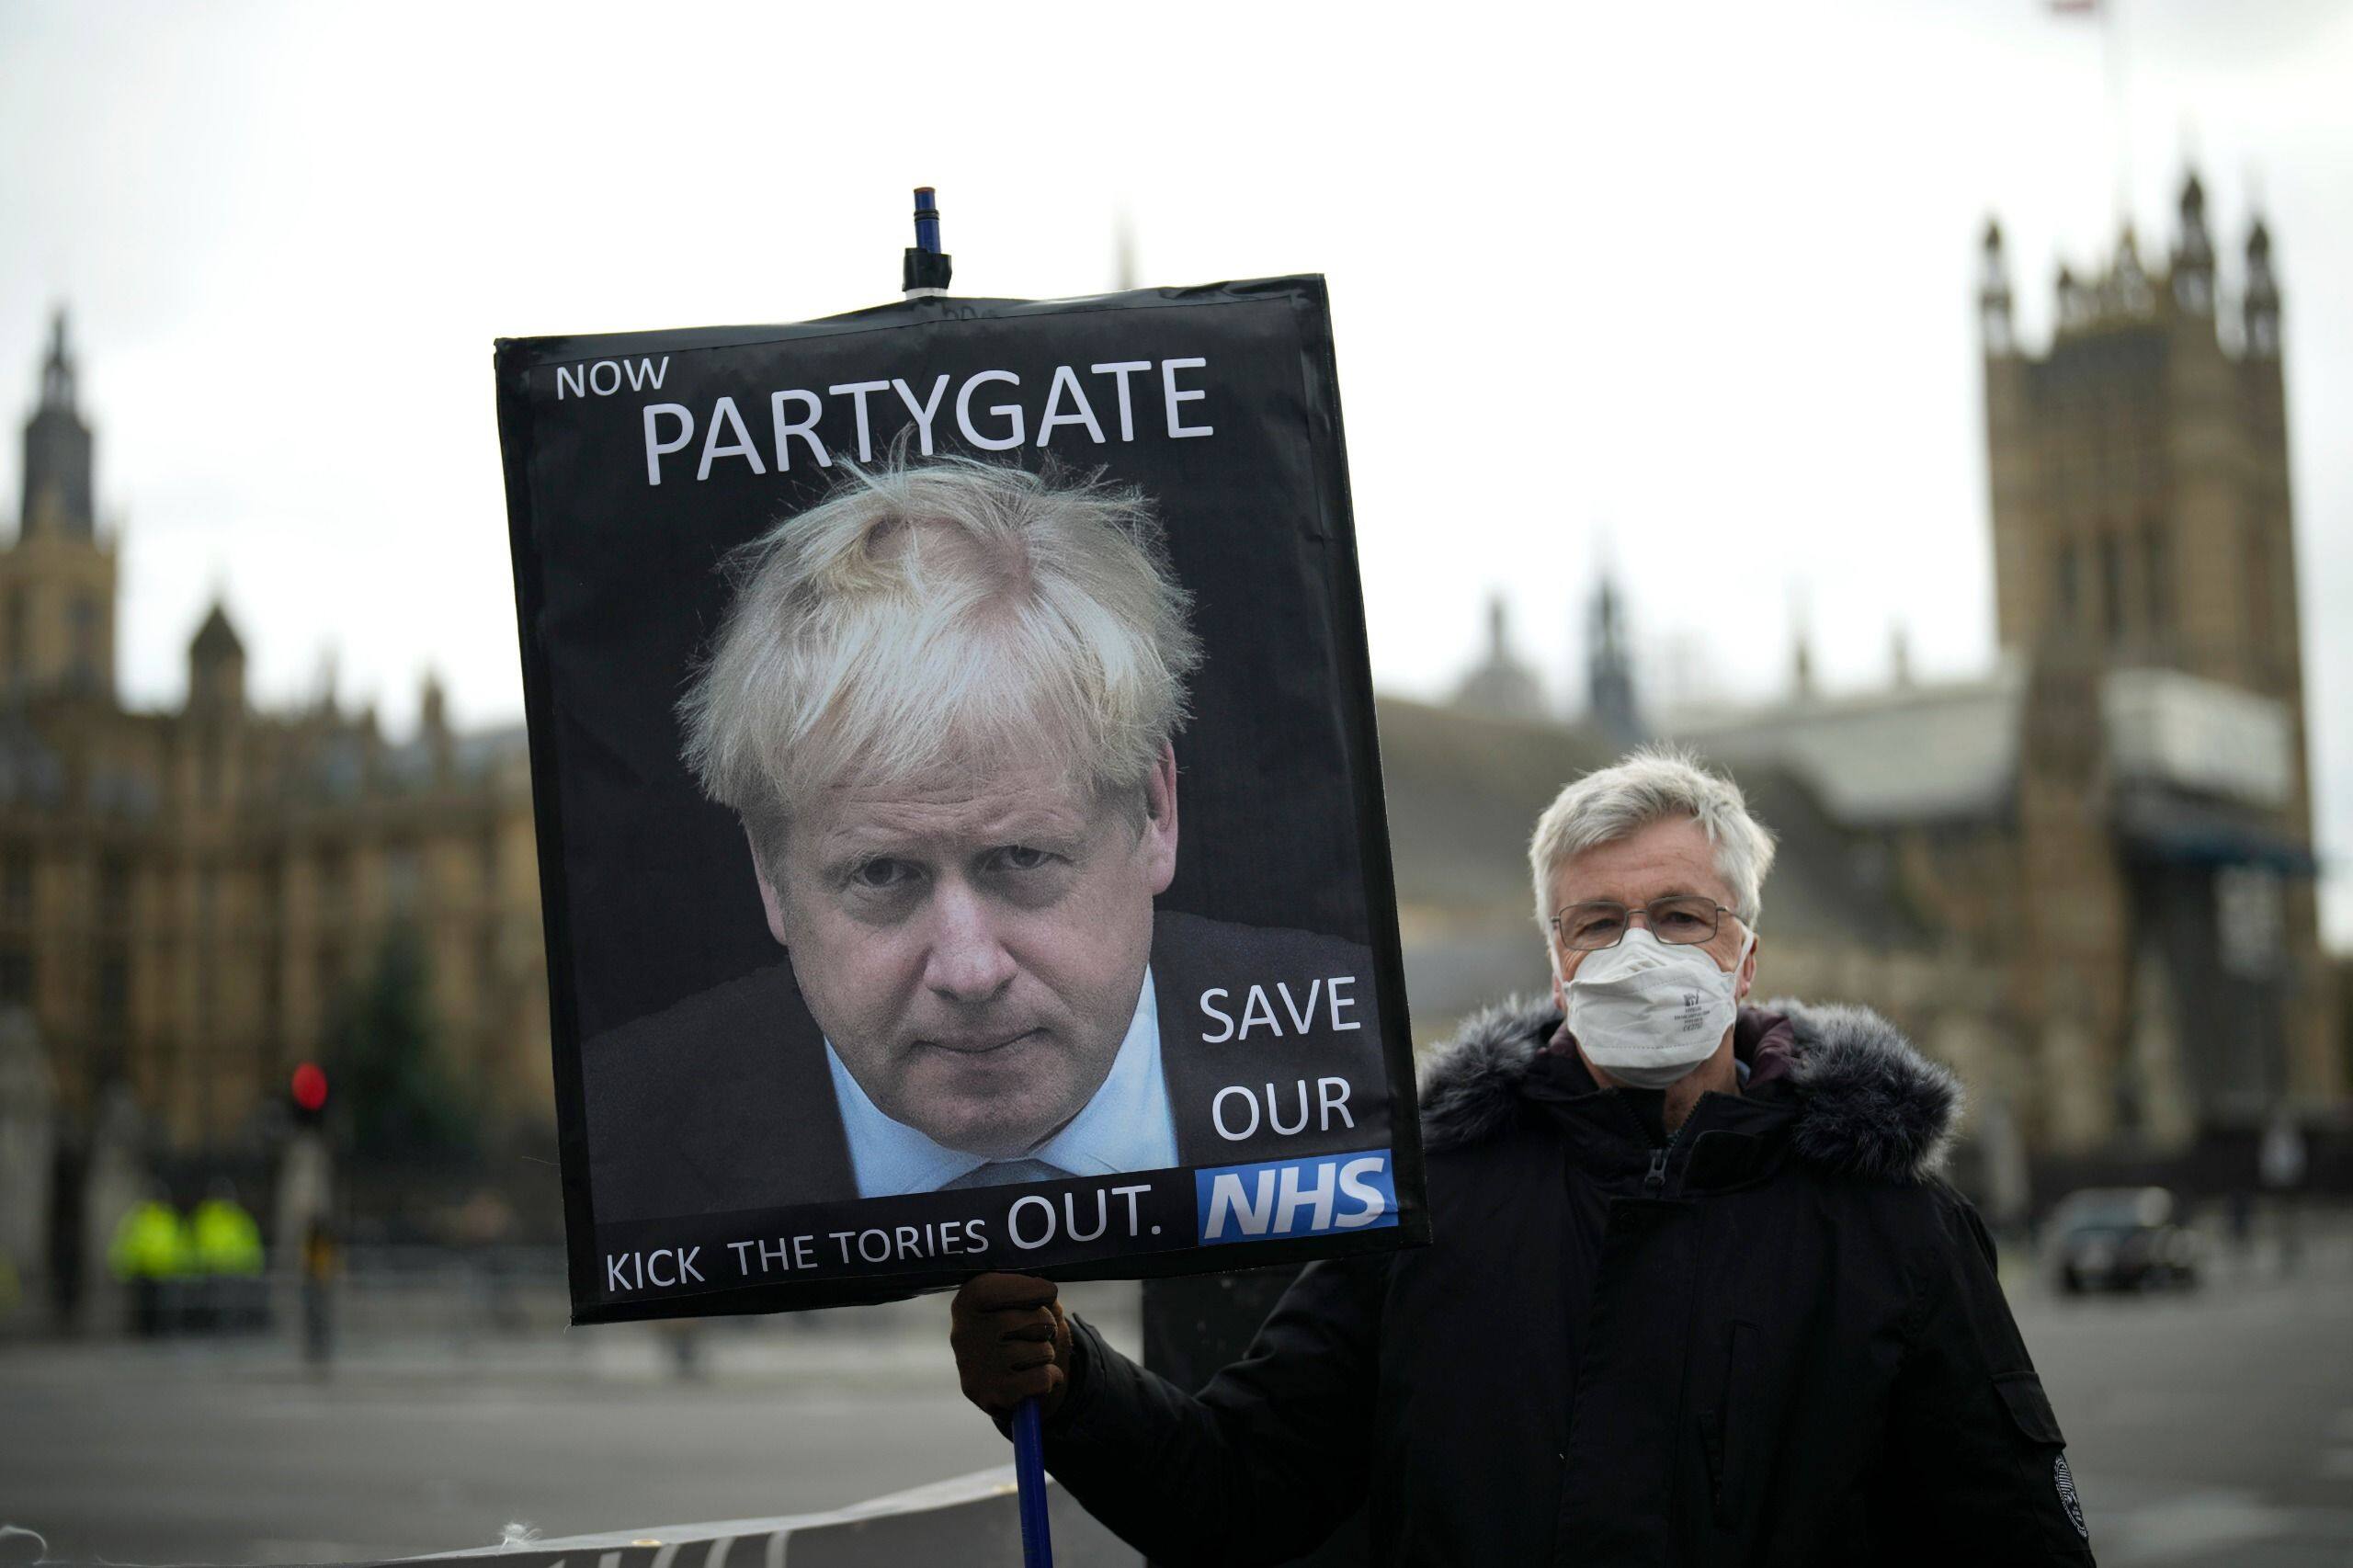 “Partygate” : Des clichés prouvent que Boris Johnson a menti au Parlement, ça sent la fin